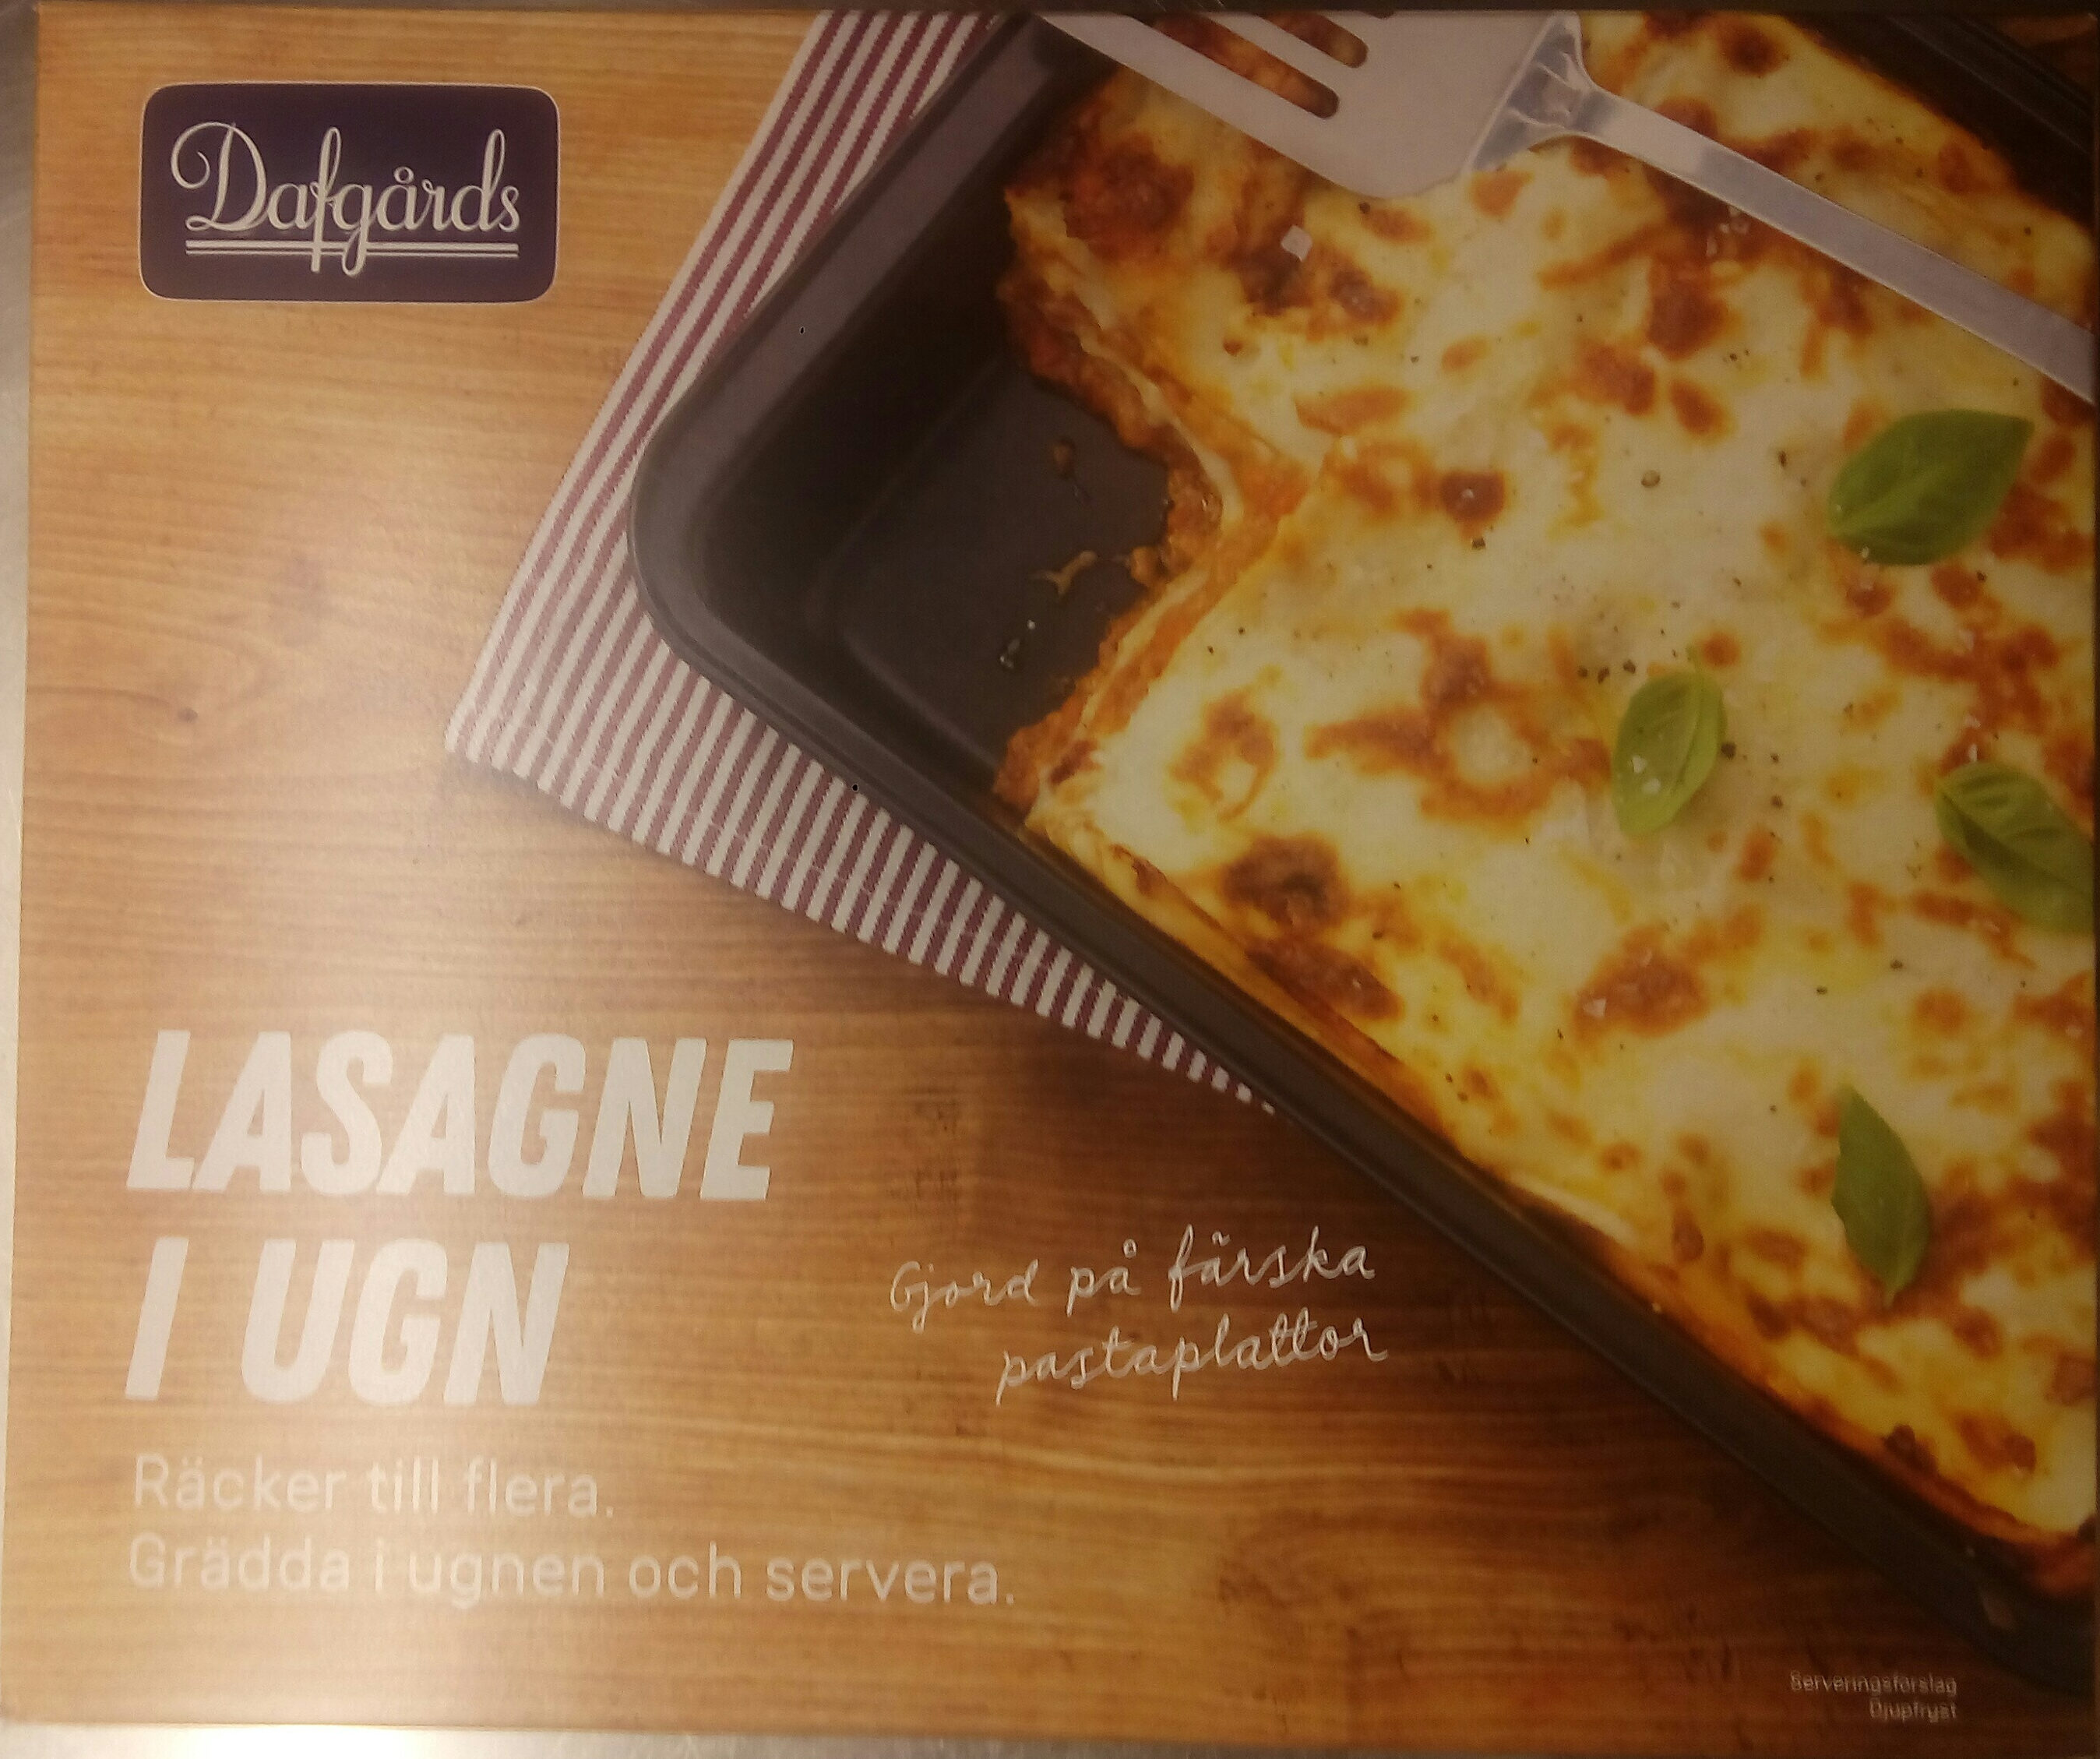 Dafgårds Lasagne i ugn - Produit - sv